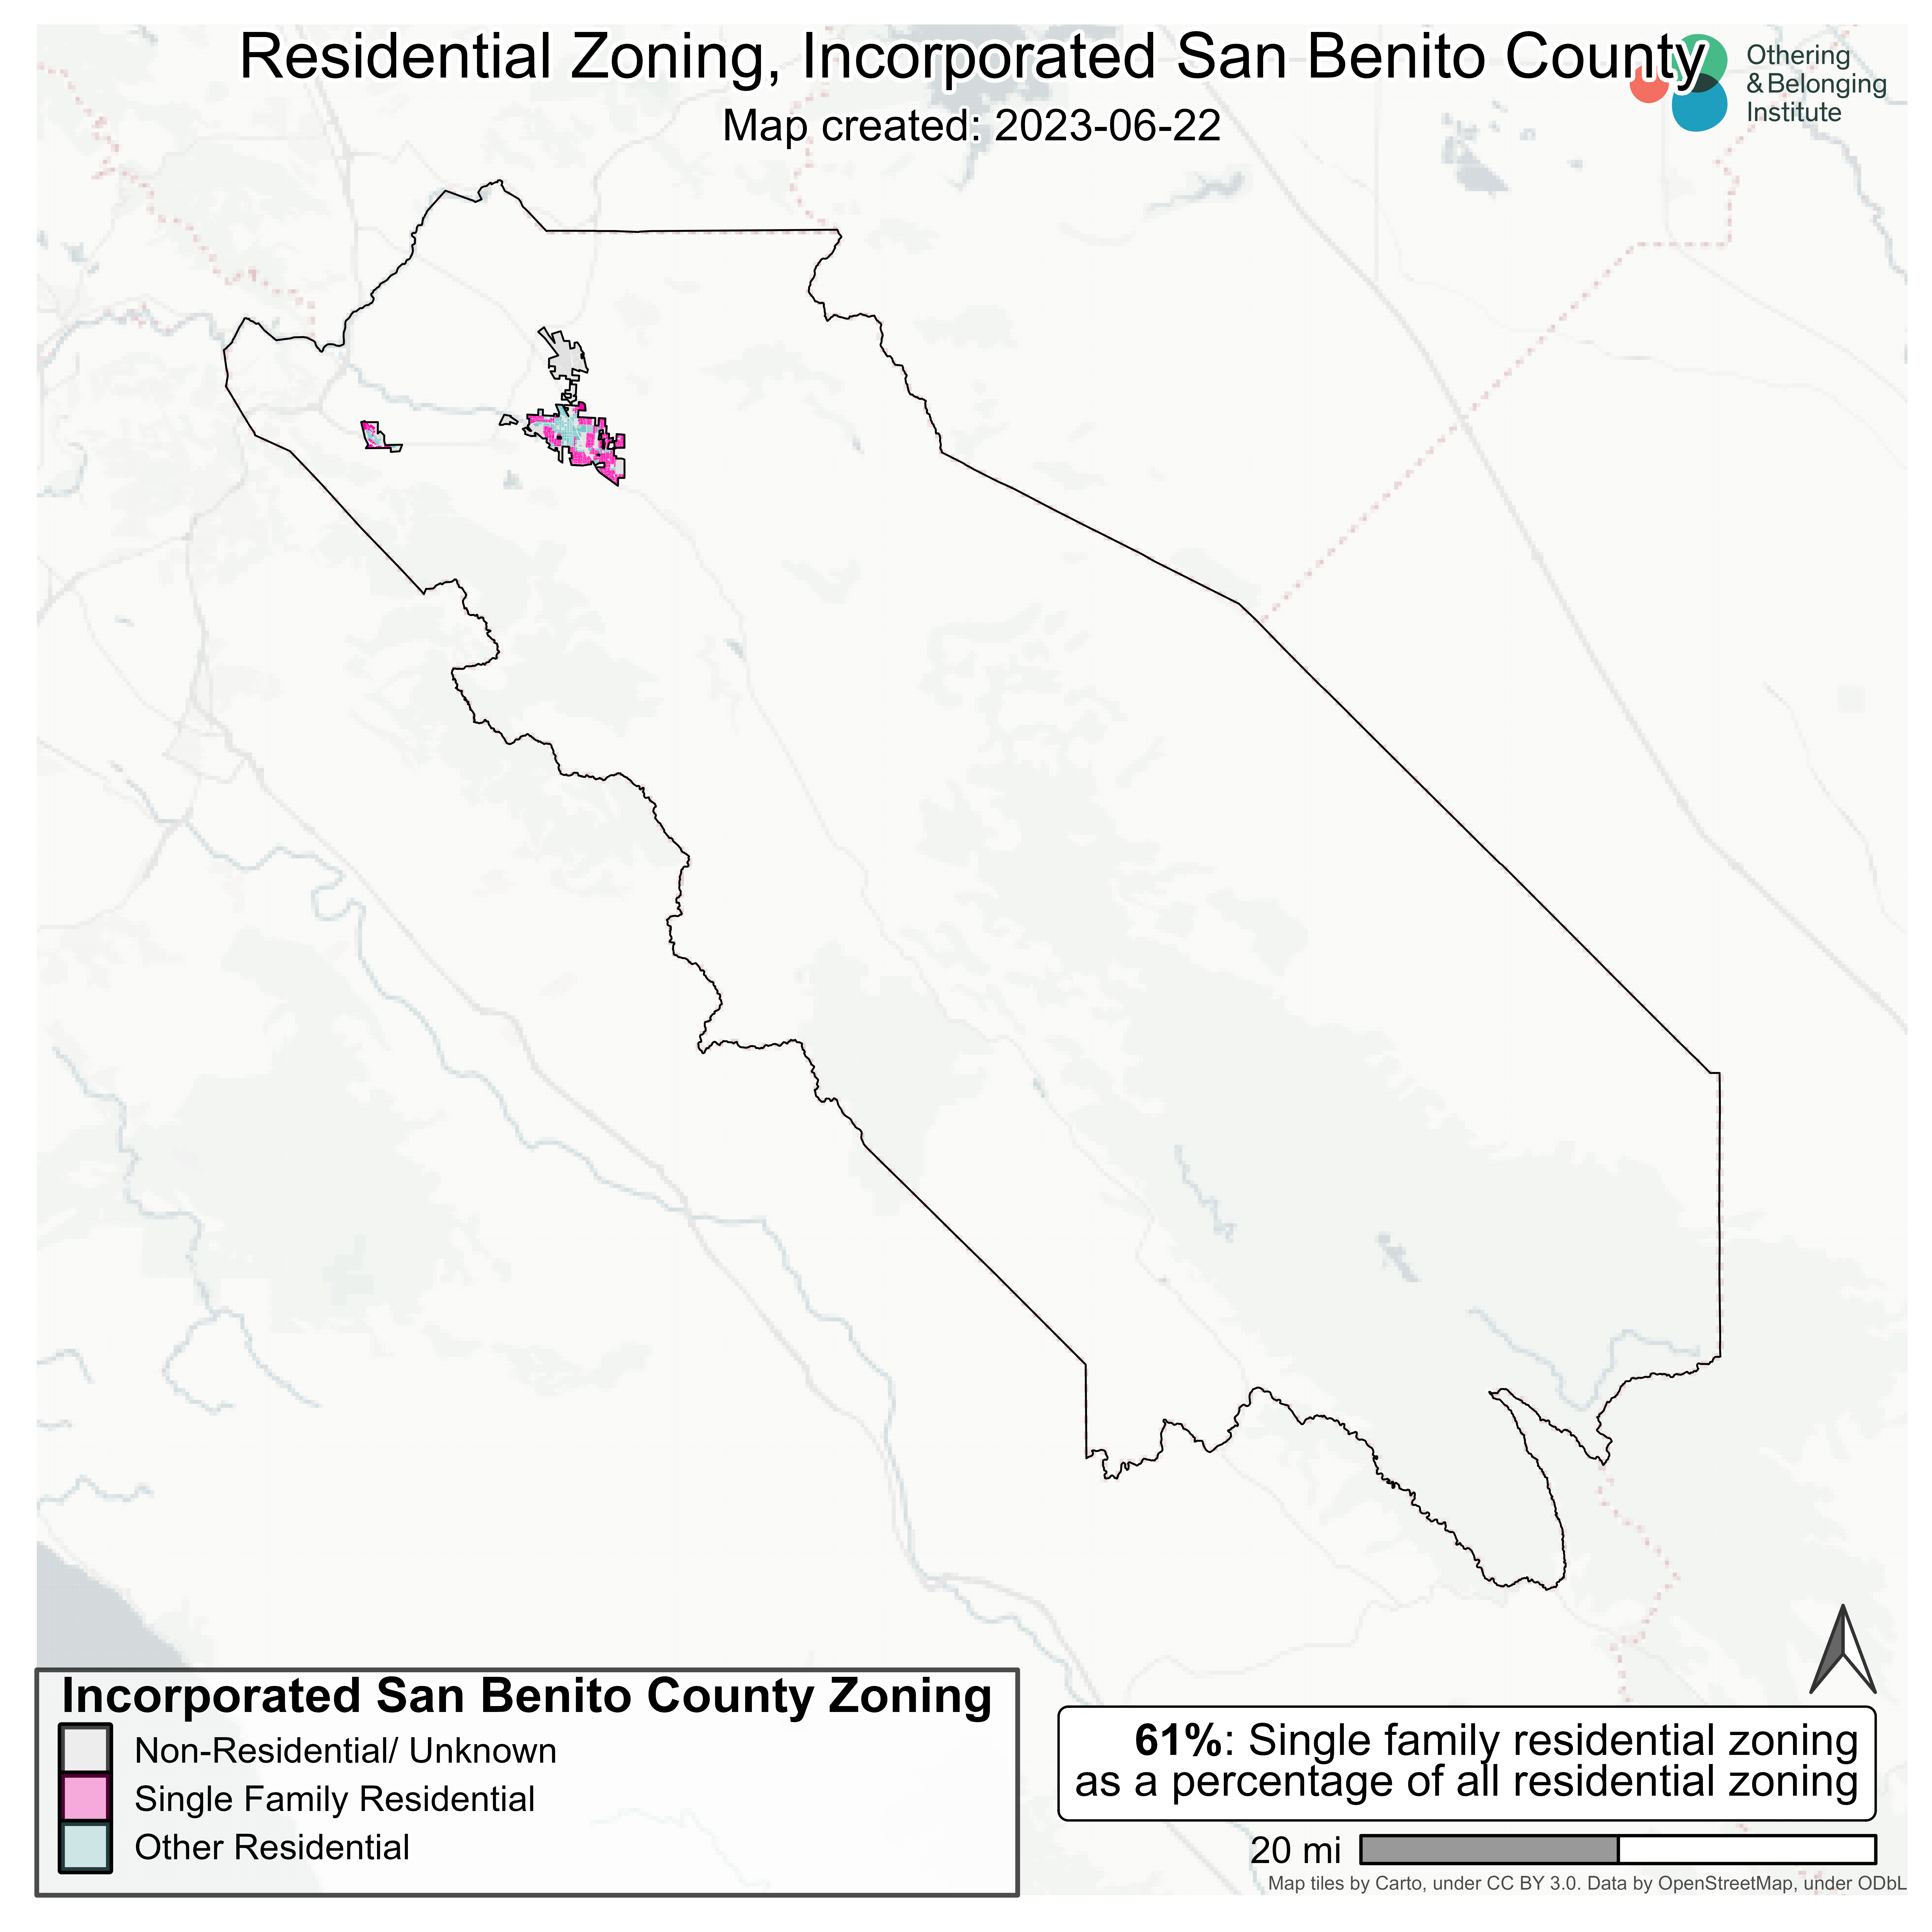 San Benito County (Incorporated)